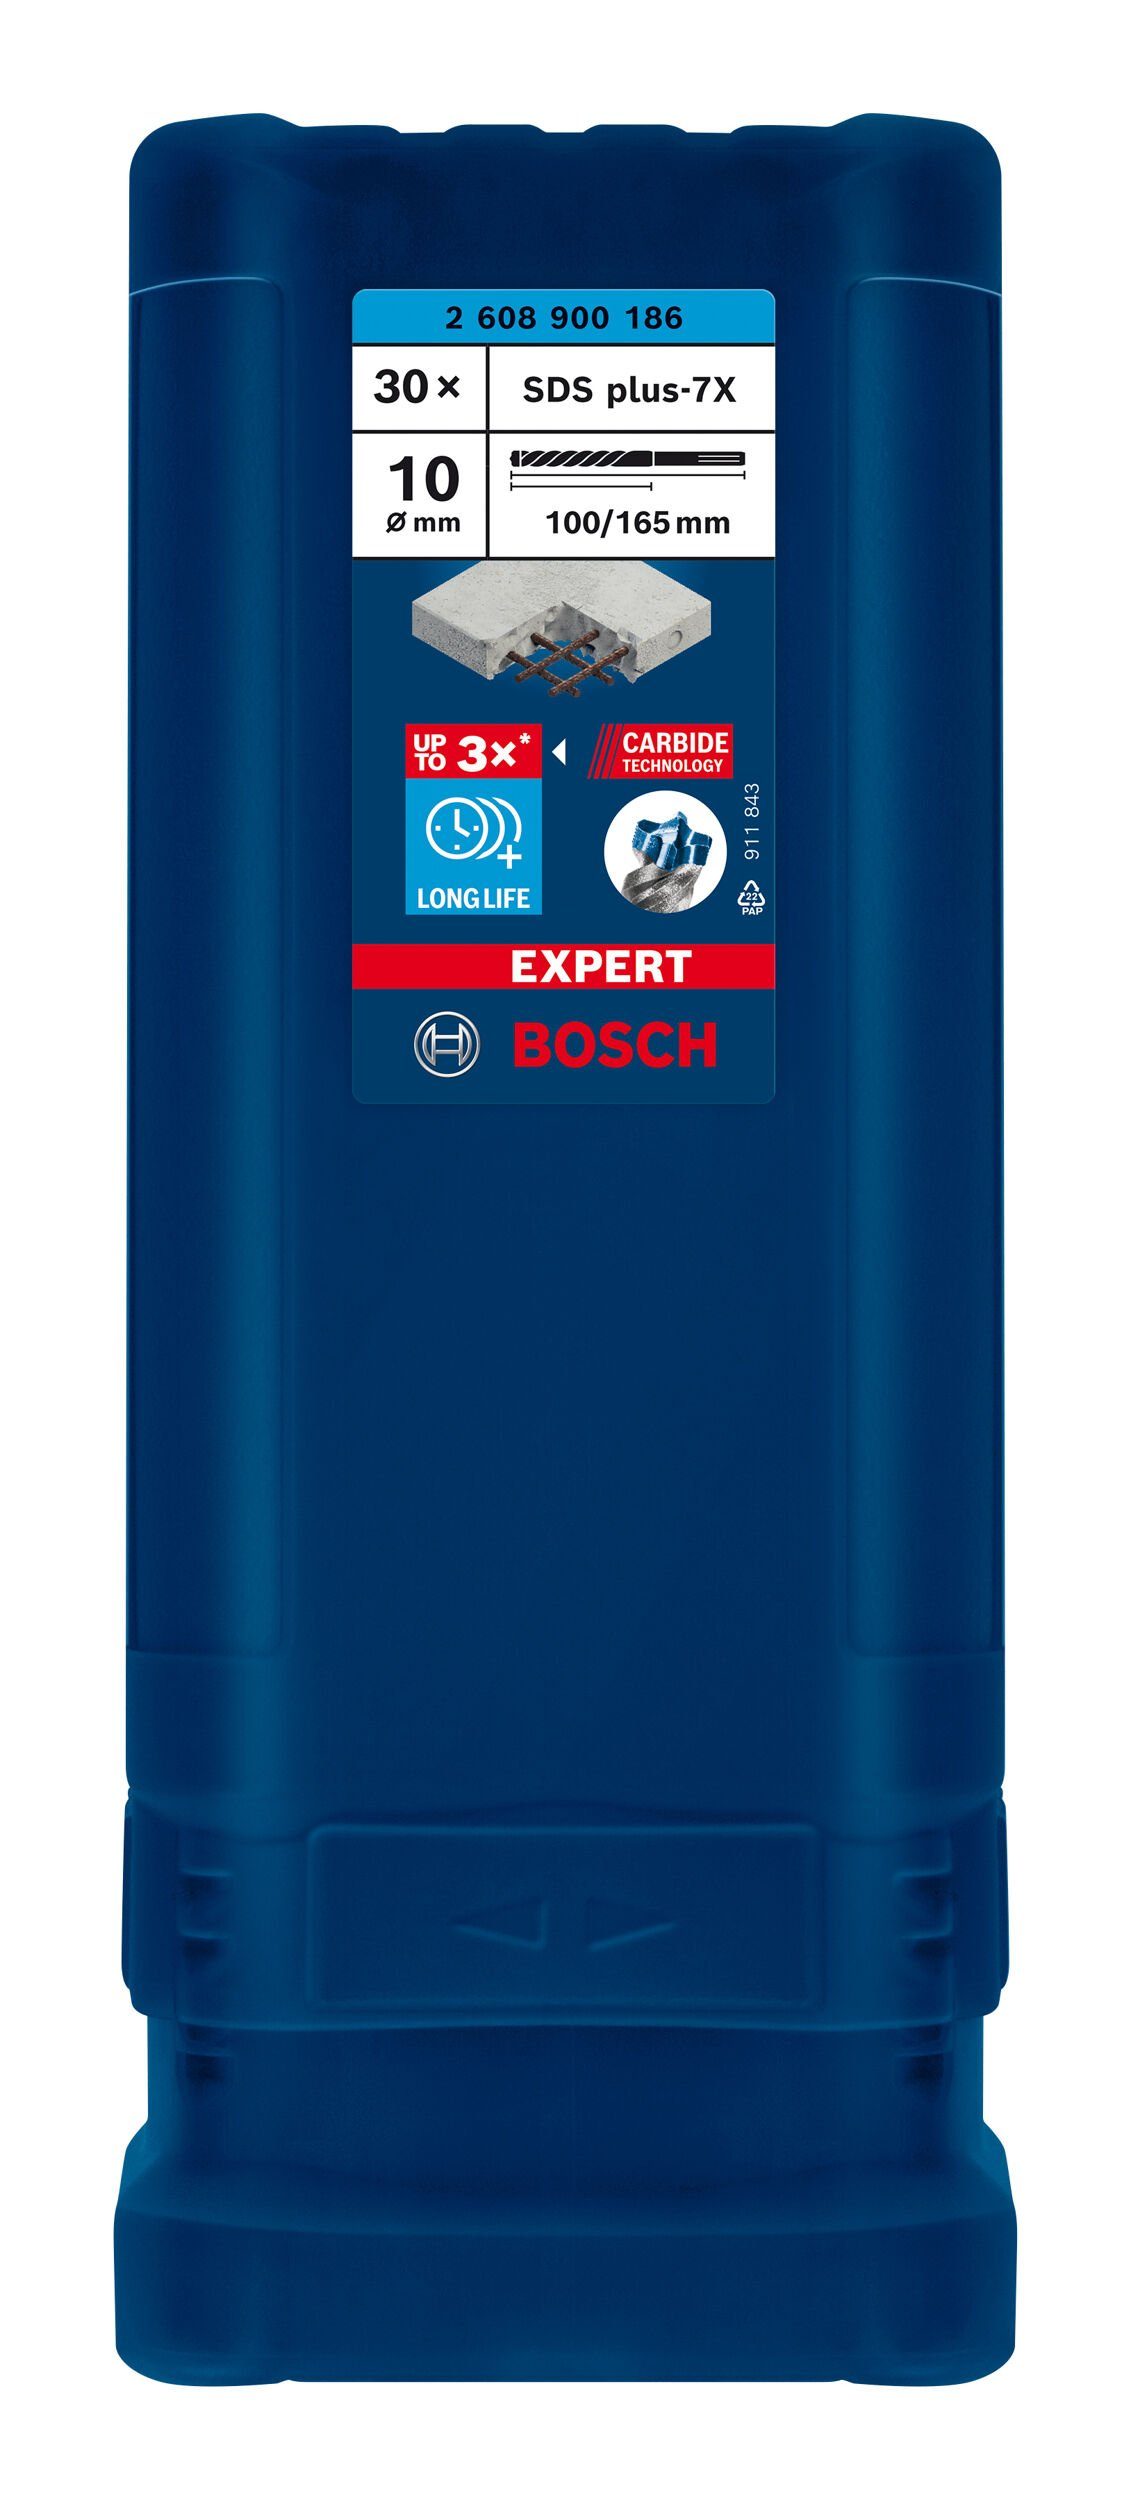 mm BOSCH x x 165 10 SDS Stück), 100 - - Expert plus-7X, Hammerbohrer 30er-Pack Universalbohrer (30